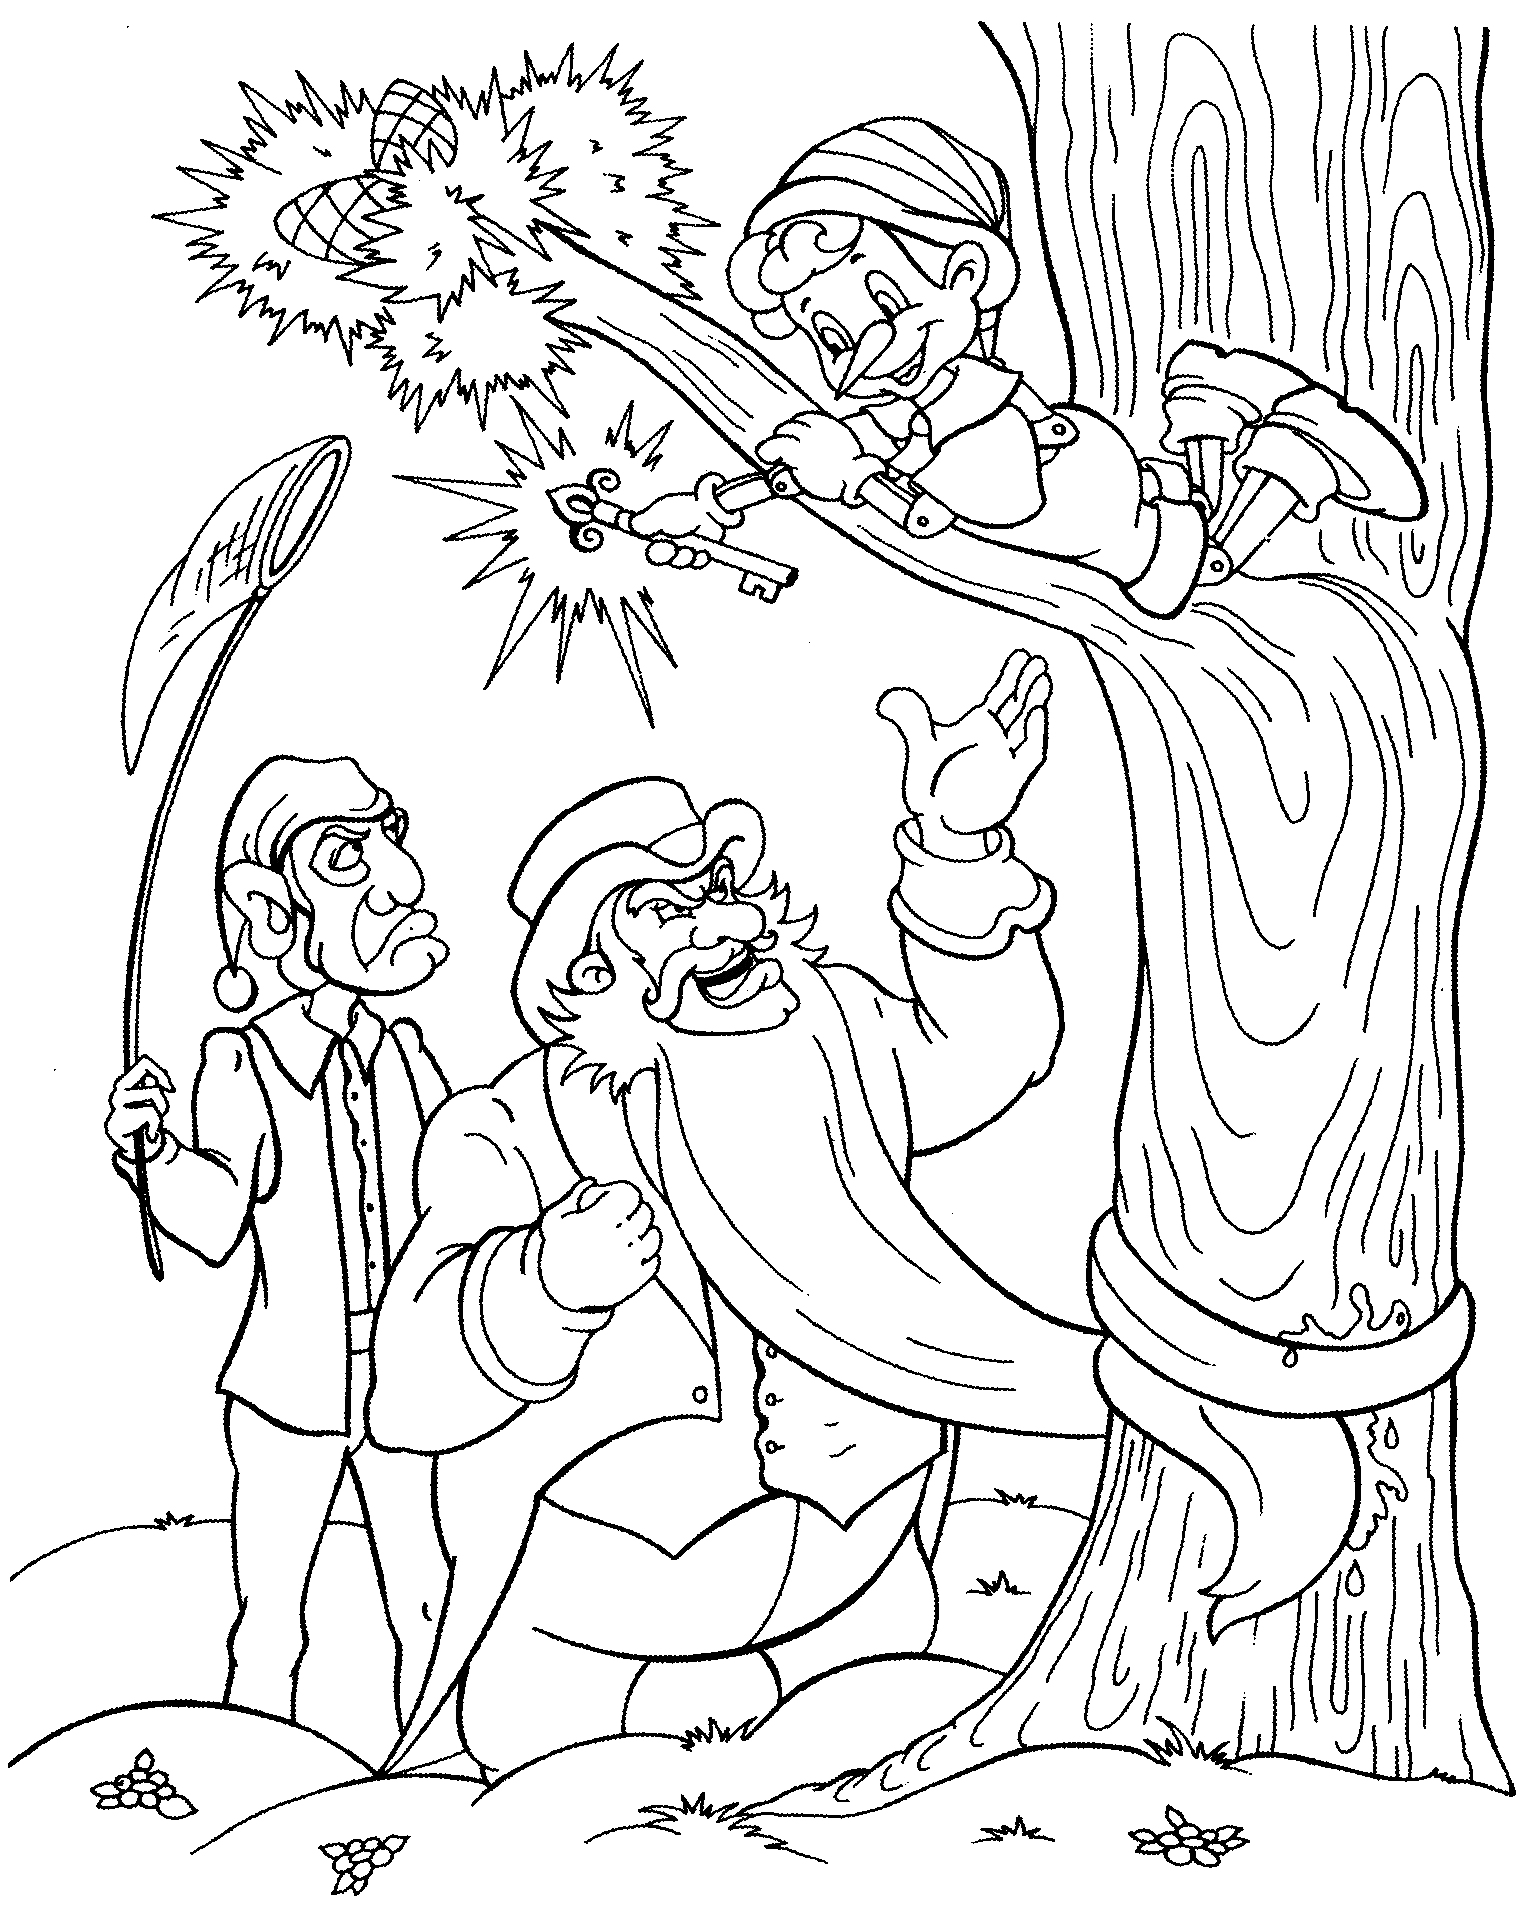 Раскраска Буратино на дереве с ключом, два человека внизу, один держит сачок